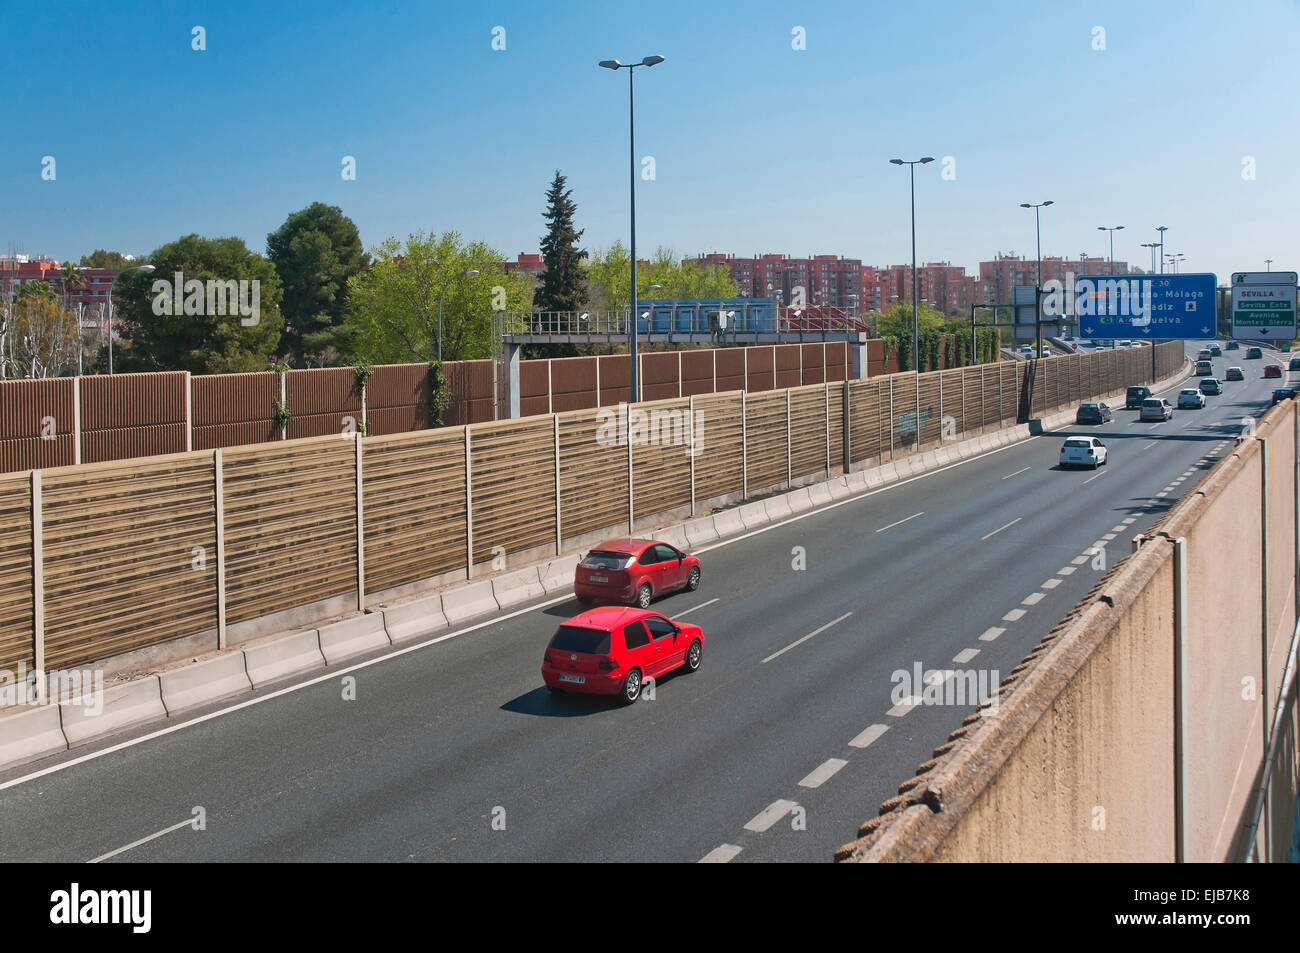 Barriere acustiche sulla strada, Siviglia, regione dell'Andalusia, Spagna, Europa Foto Stock